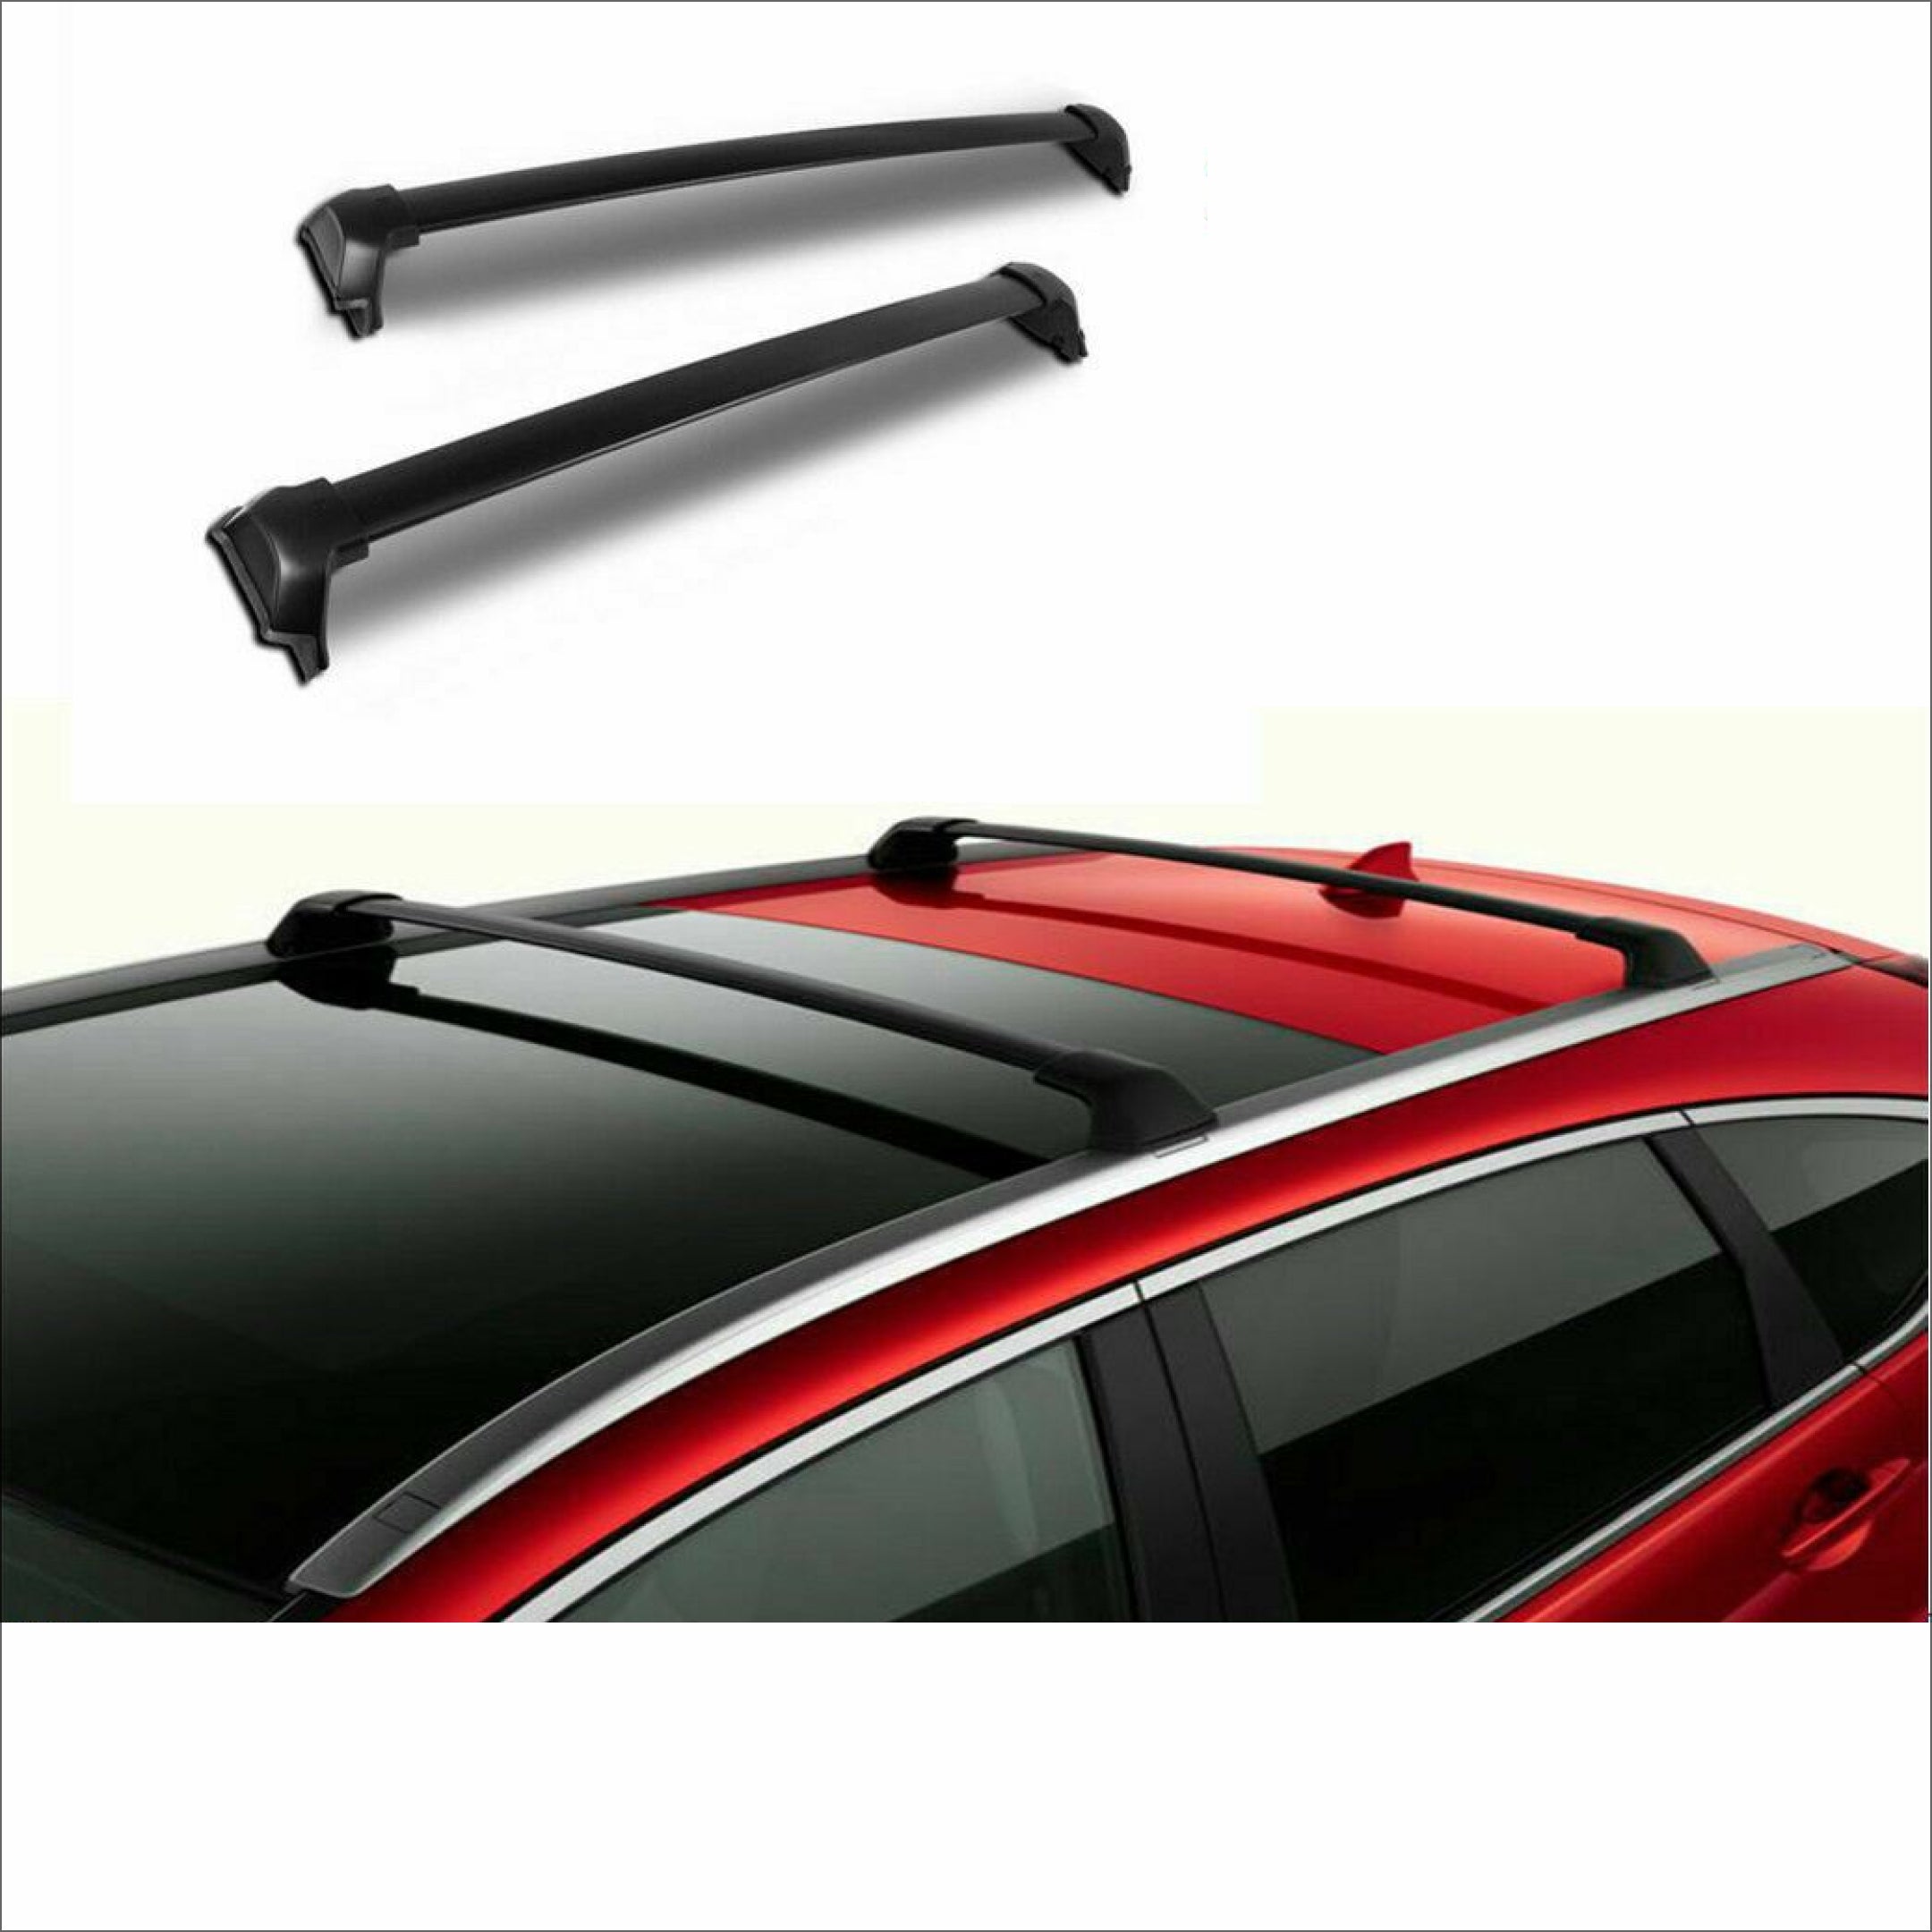 Roof Rack Cross Bar - Premium Black | Fits Honda CR-V (17-22)